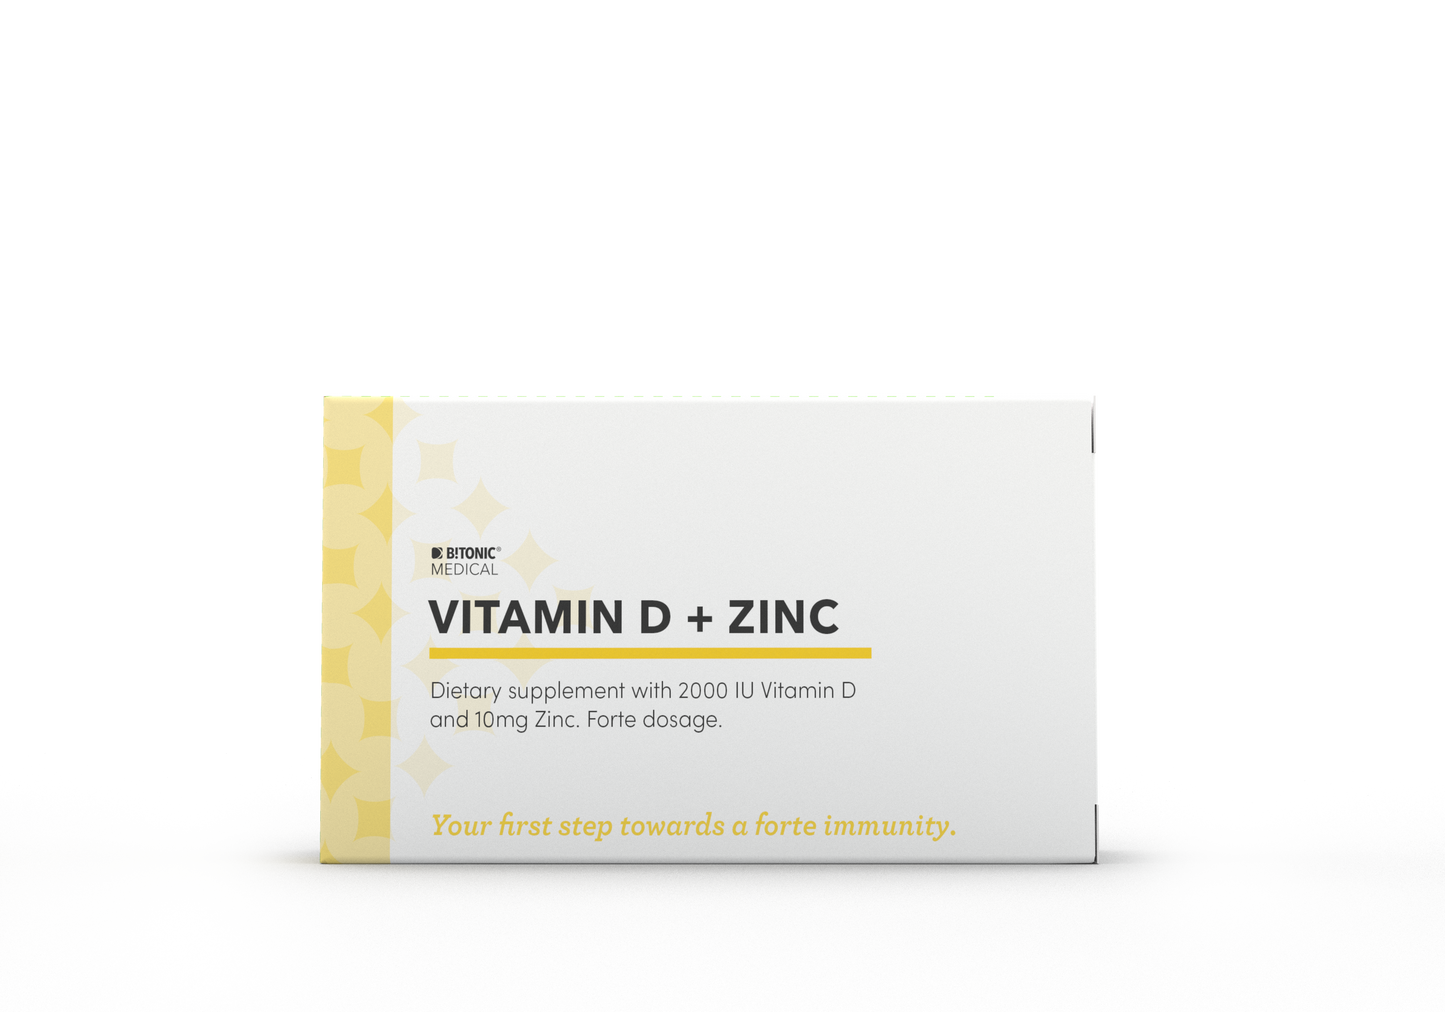 BTONIC MEDICAL Vitamin D + Zinc